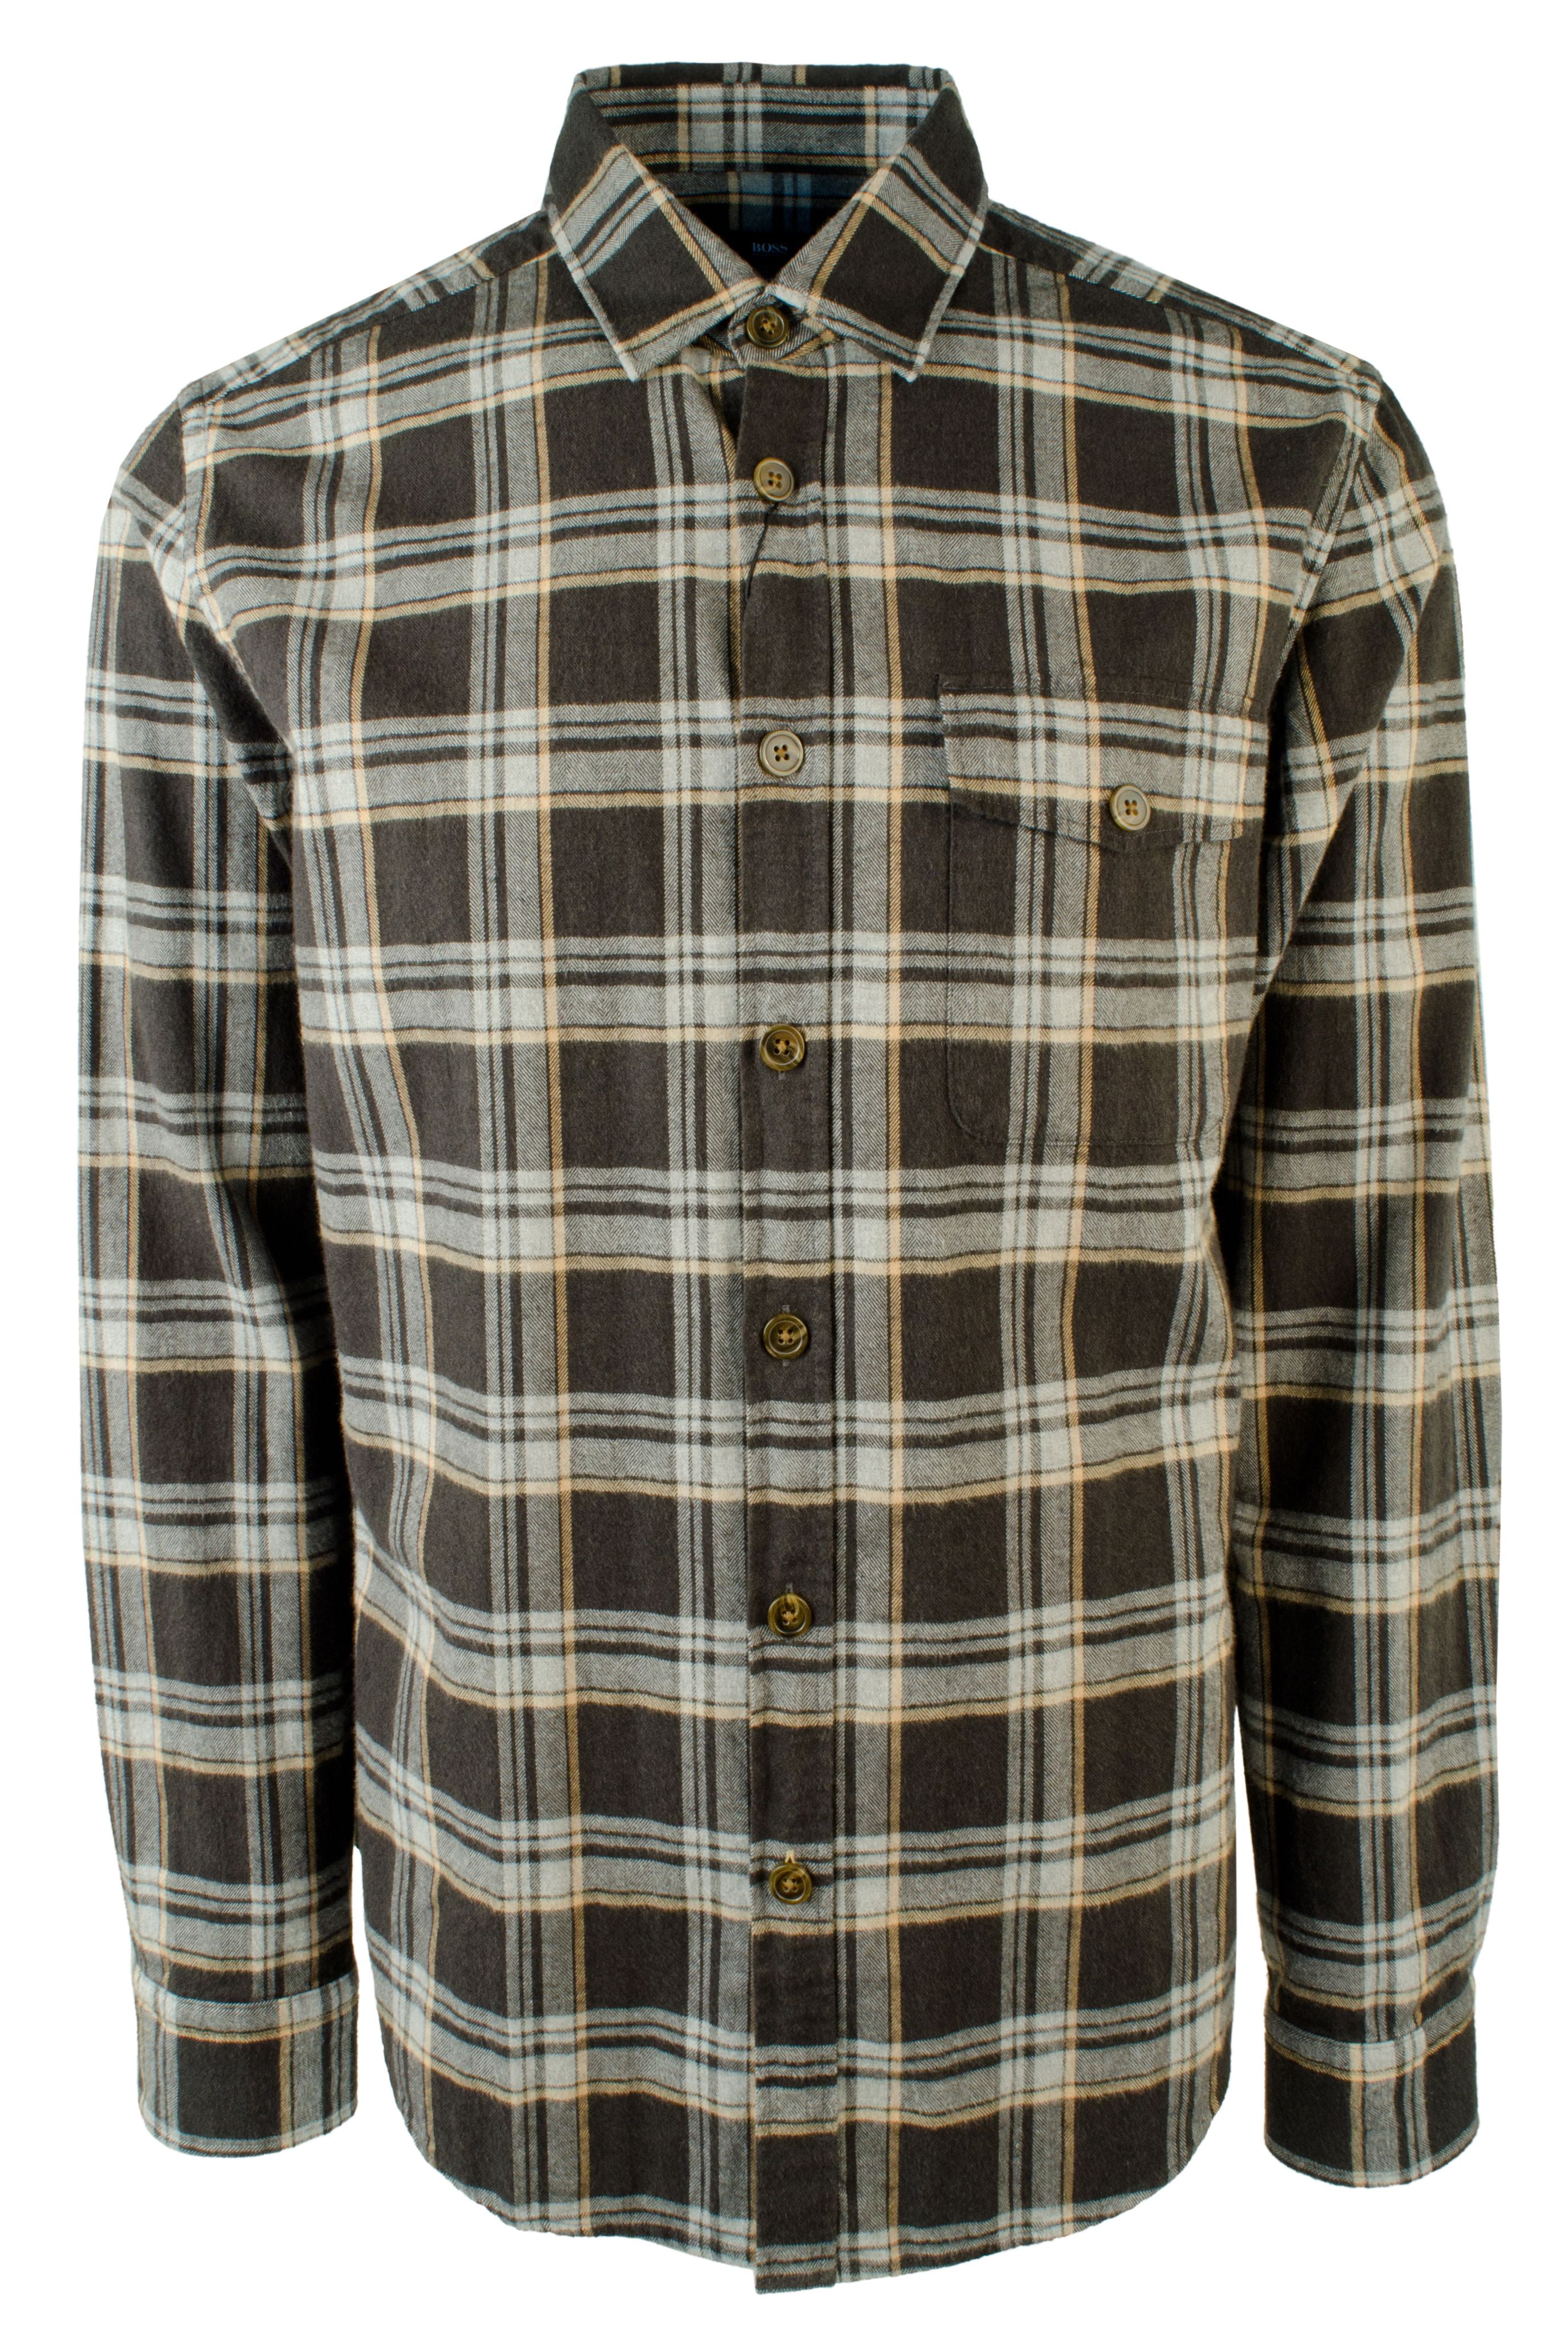 Lalo Plaid Flannel Shirt - Walmart 